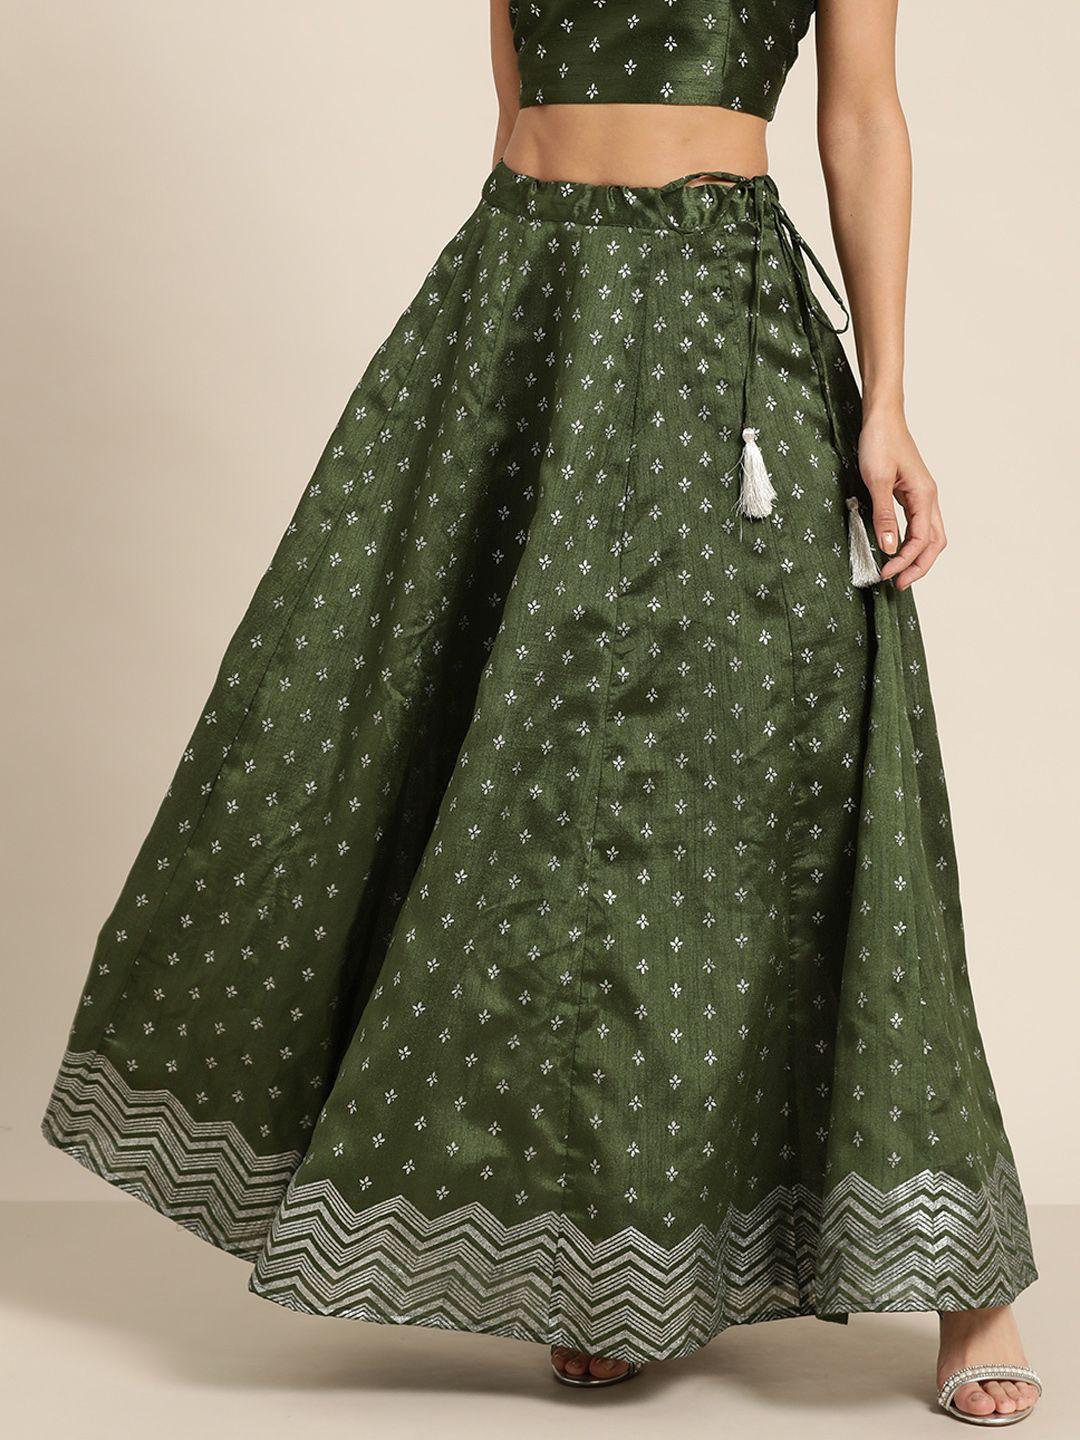 shae by sassafras women green foil print a-line skirt